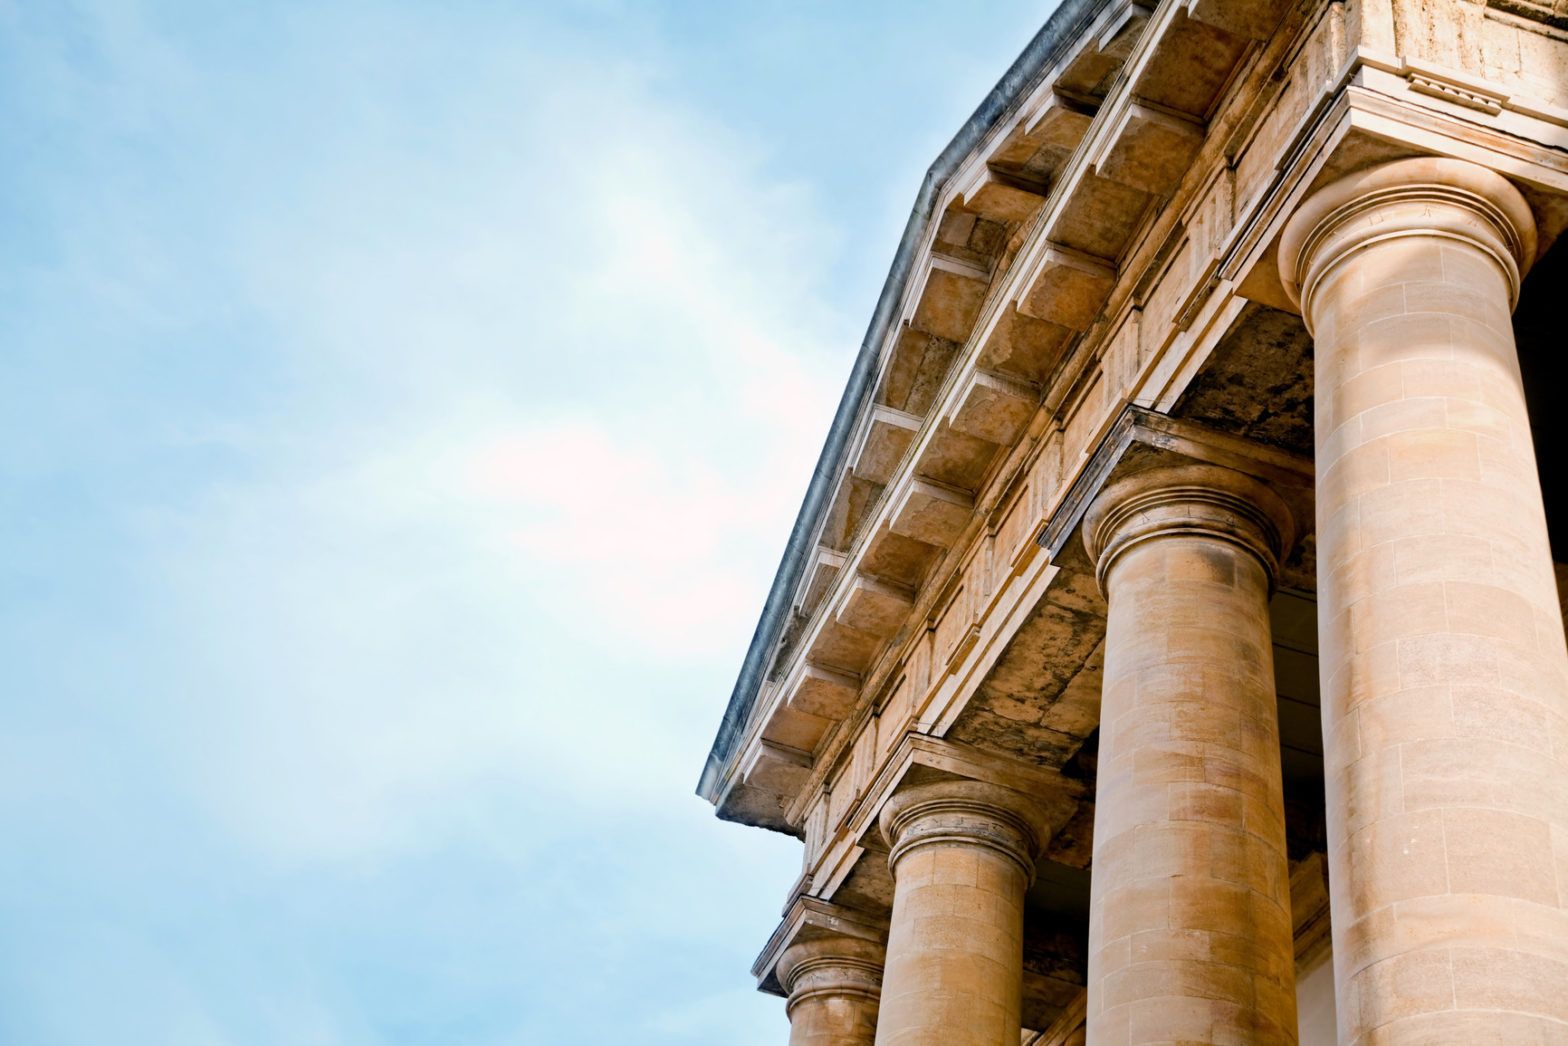 Geldwäschebeauftragter schaut auf ein altes römisches Säulengebäude